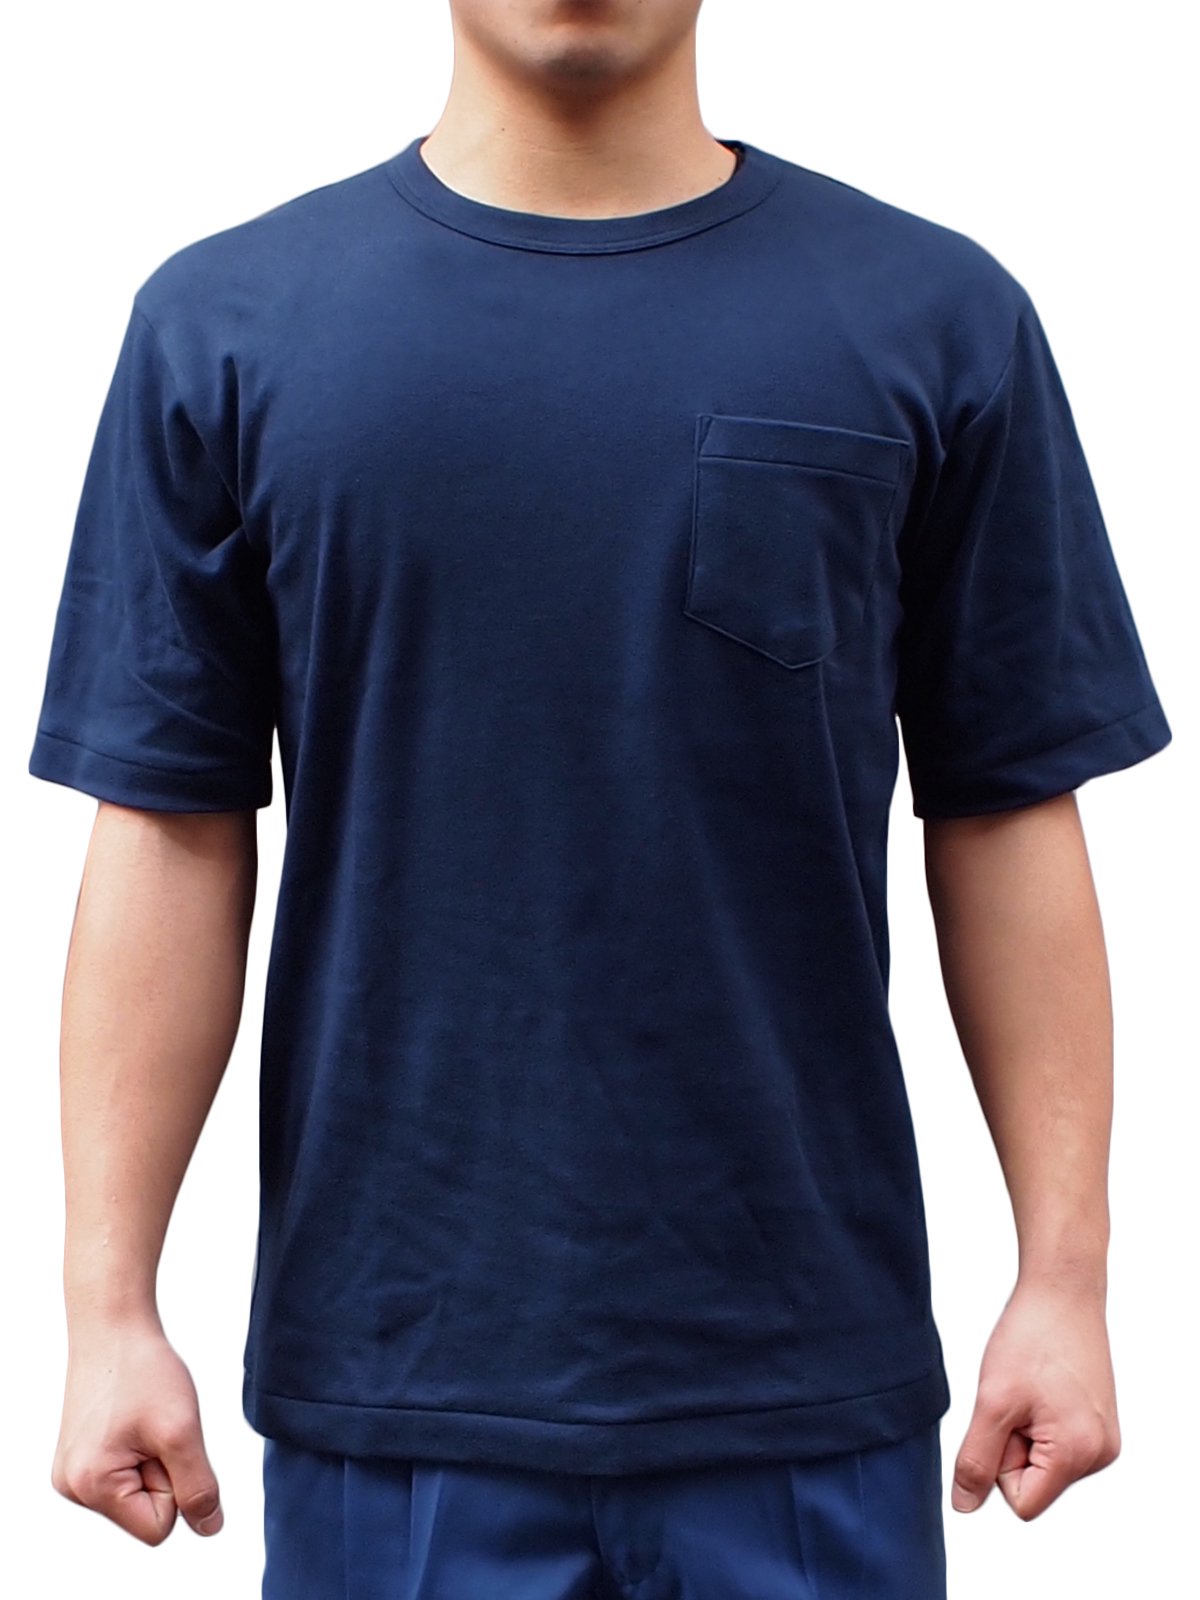 紺半袖パルパーTシャツ - 【公式通販】消防グッズ通販の【消防